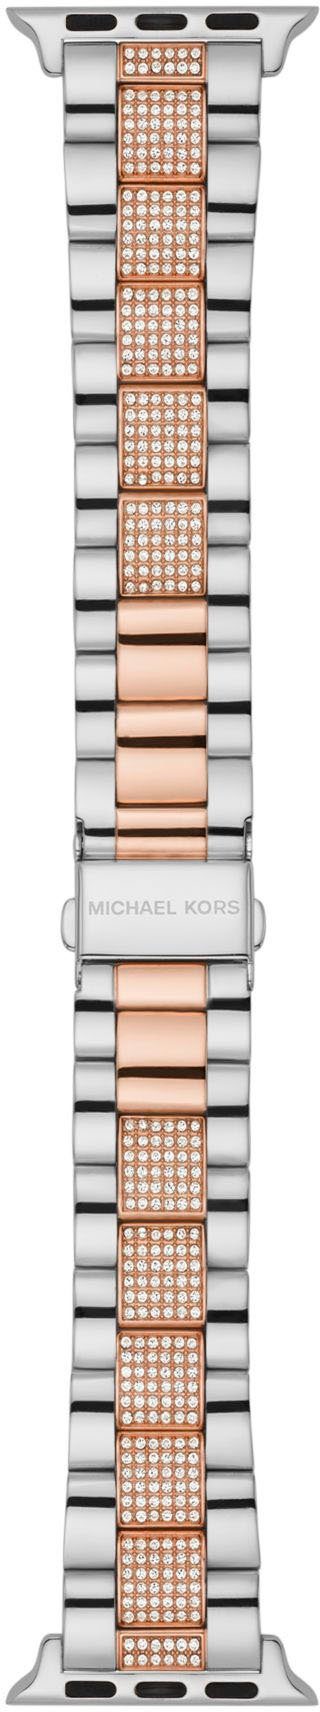 ideal Geschenk Apple Strap, Smartwatch-Armband KORS MICHAEL auch MKS8005, als